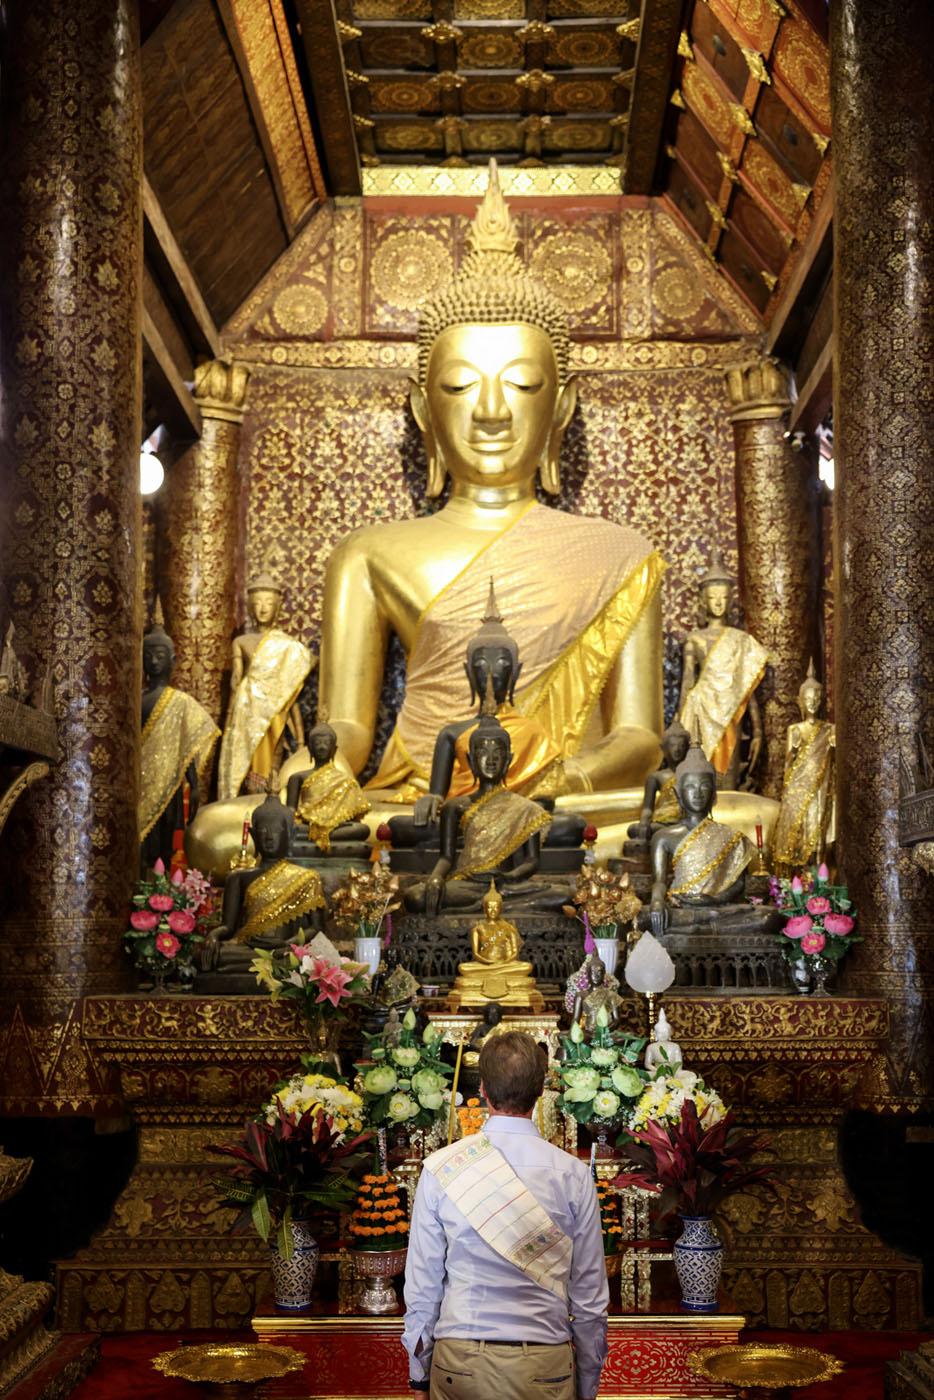 Le Grand-Duc devant une statue de Bouddha